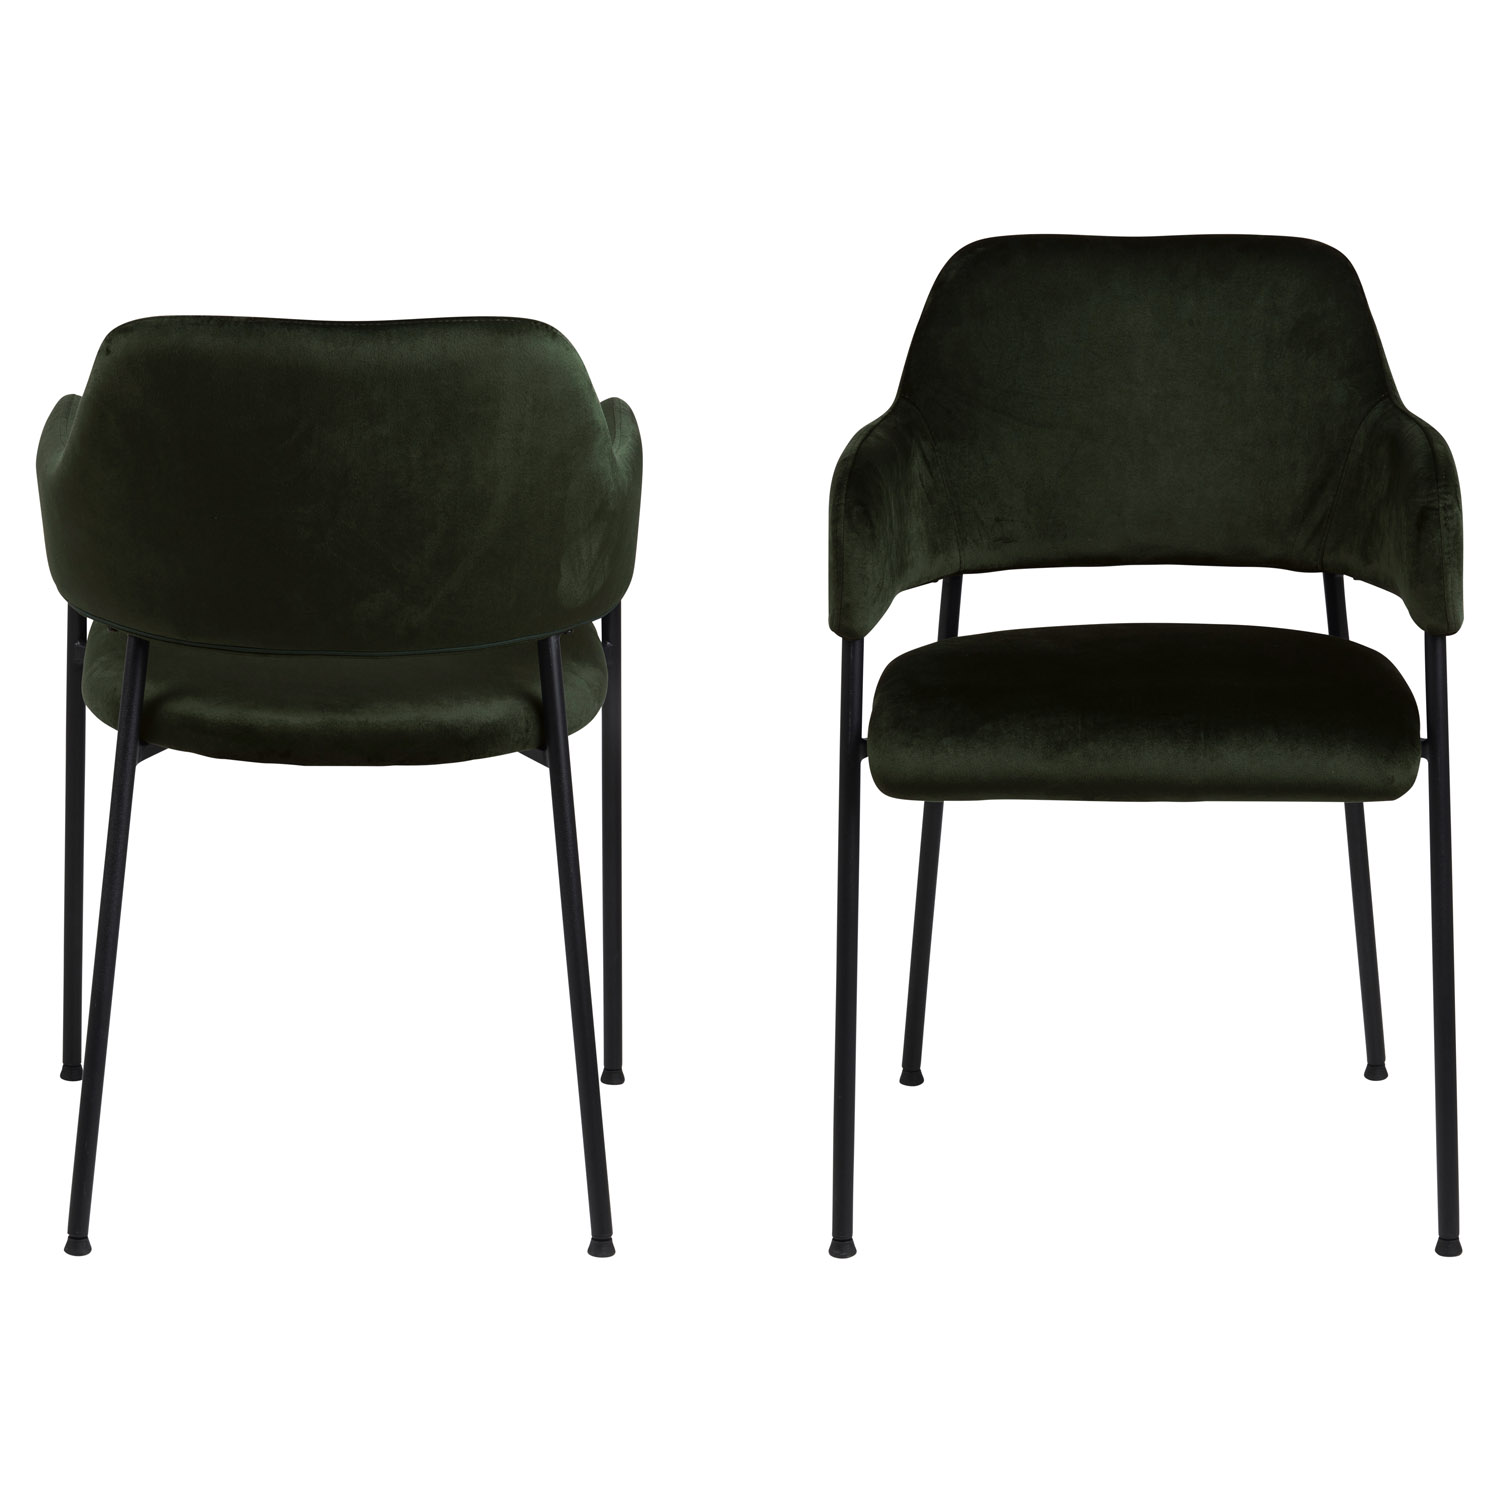 ACT NORDIC Lima spisebordsstol, m. armlæn - olivengrøn polyester og sort metal